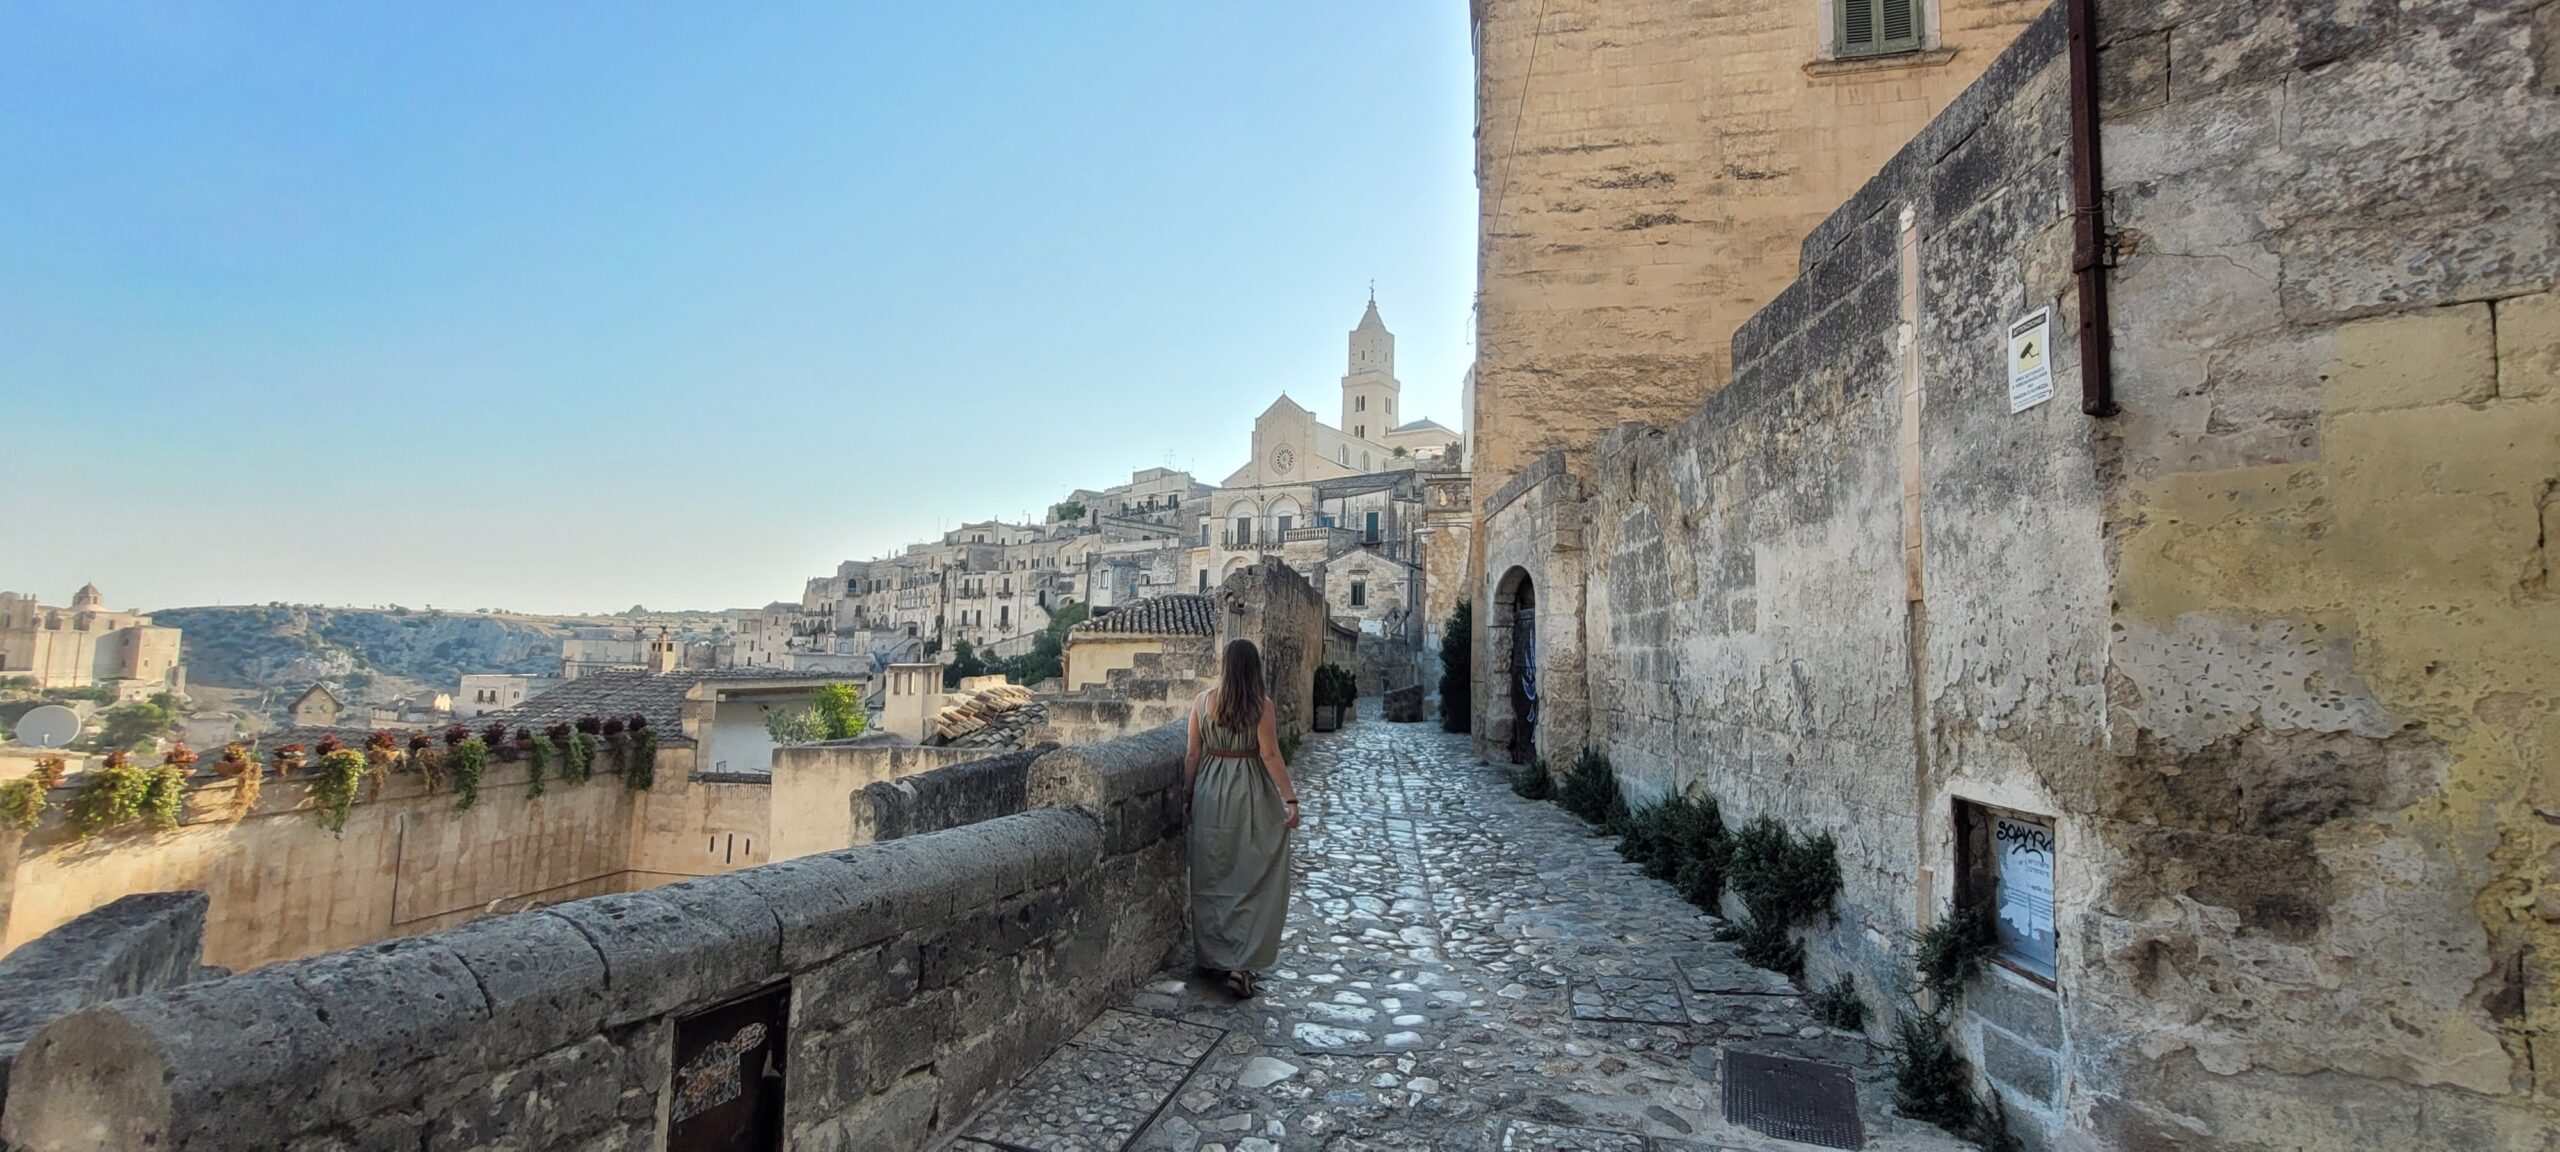 Duomo de Matera